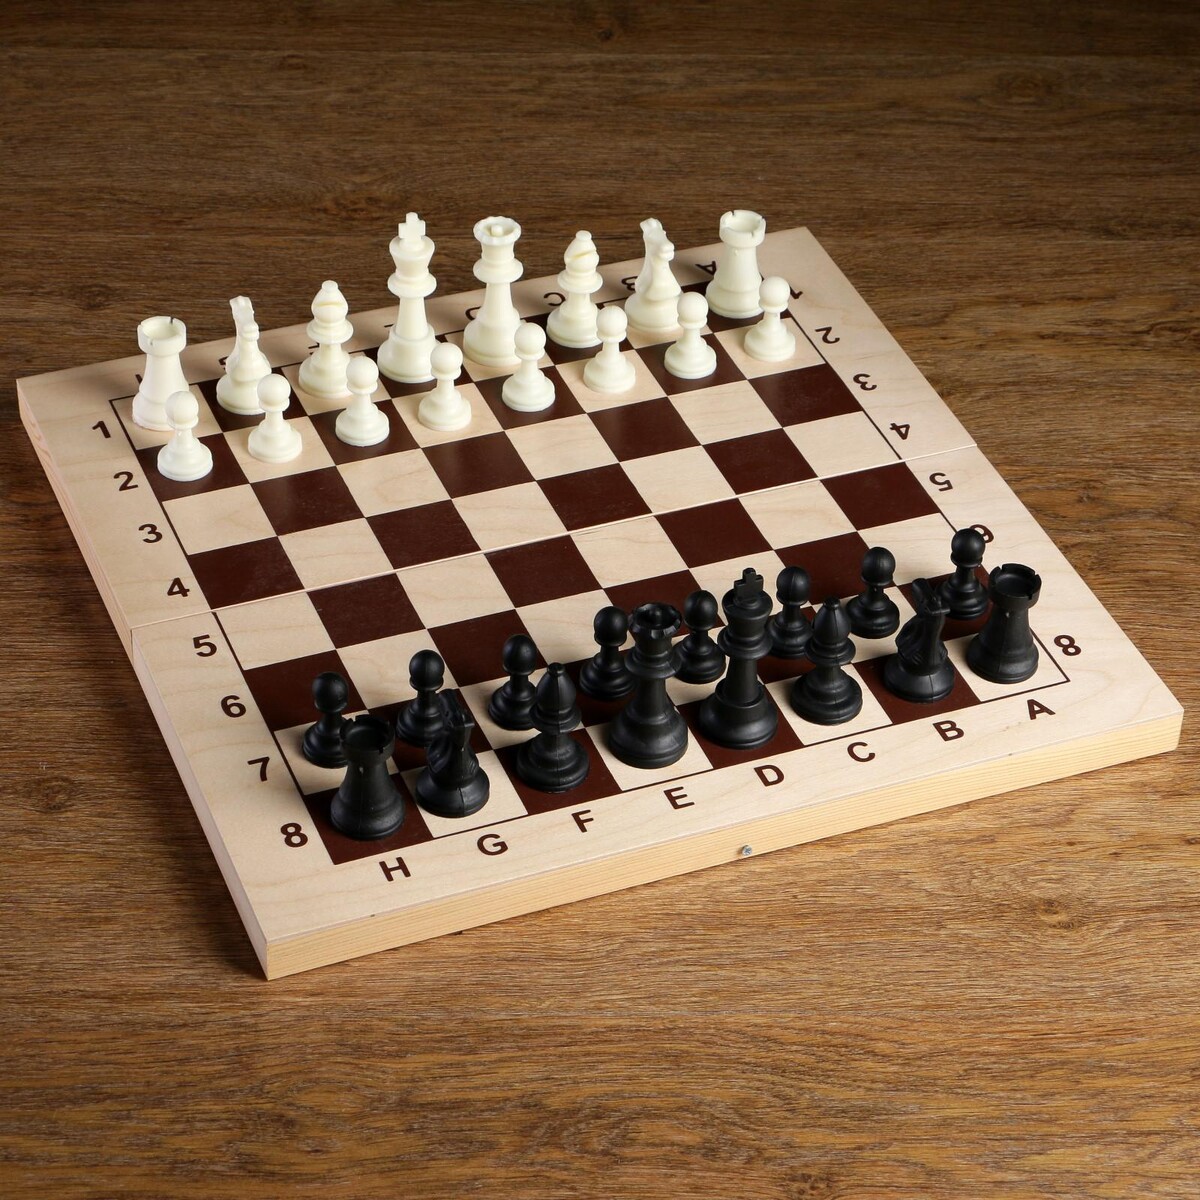 Шахматные фигуры, пластик, король h-9 см, пешка h-4.1 см король ардена 3